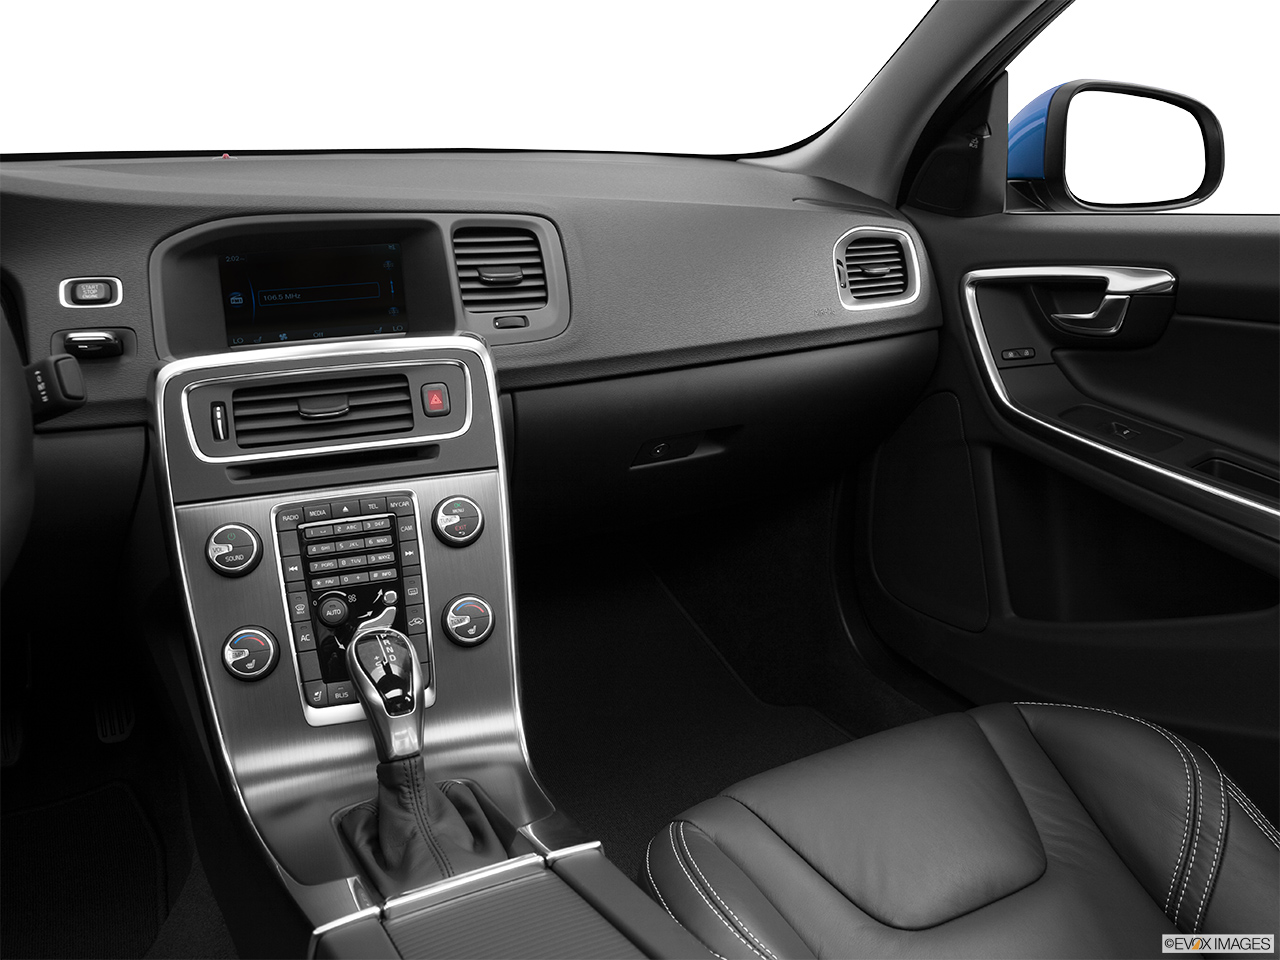 2014 Volvo S60 T5 FWD Premier Plus Center Console/Passenger Side. 